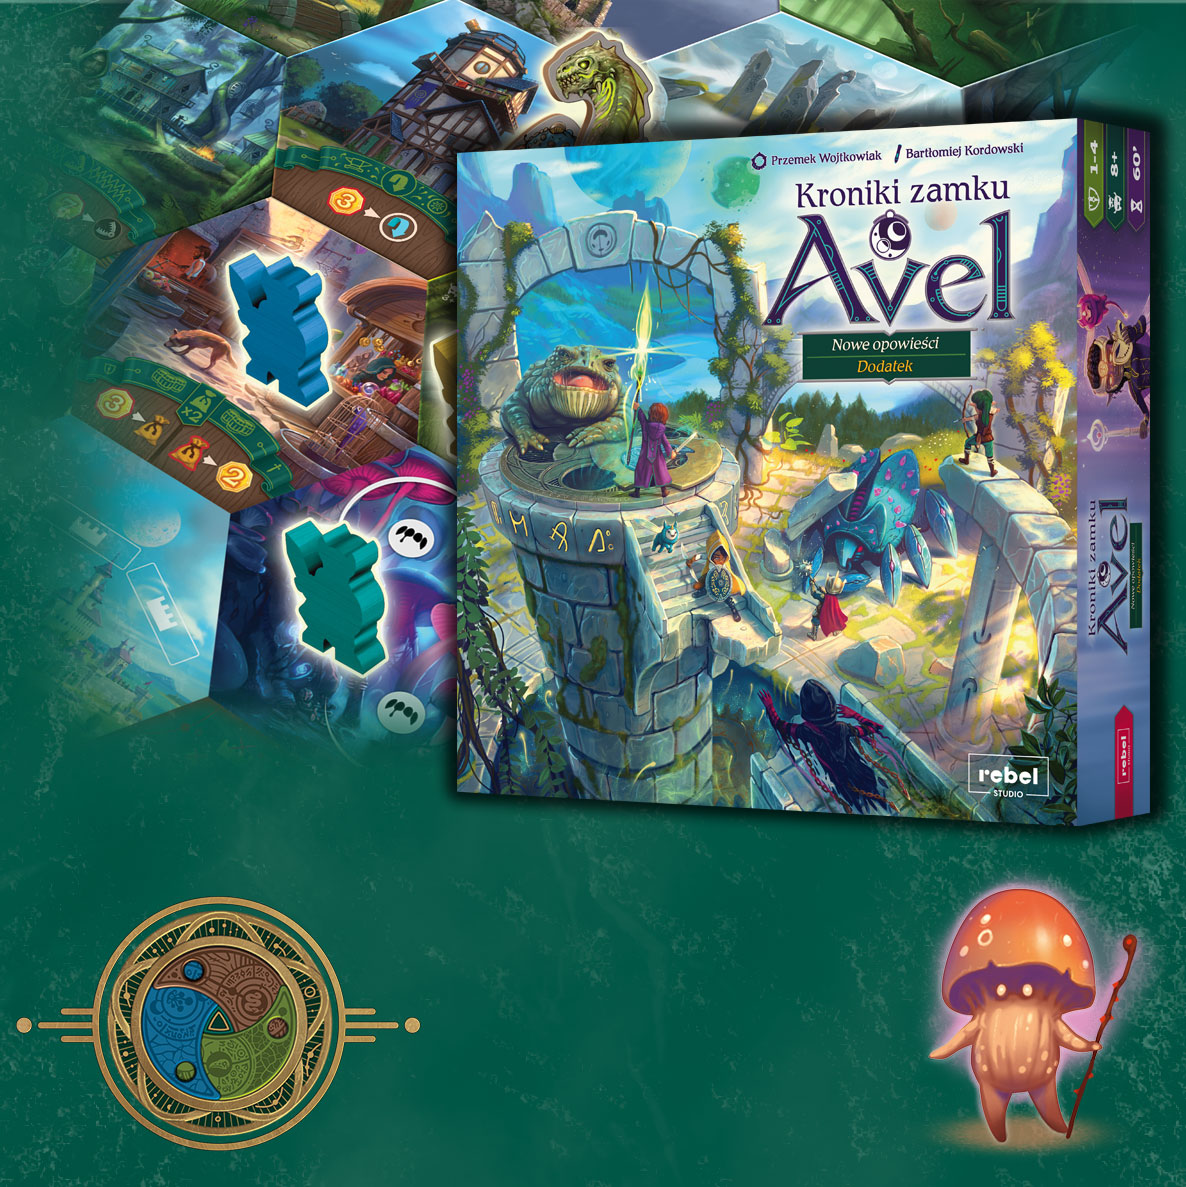 pudełko dodatku do gry Kroniki zamku Avel - Nowe opowieści